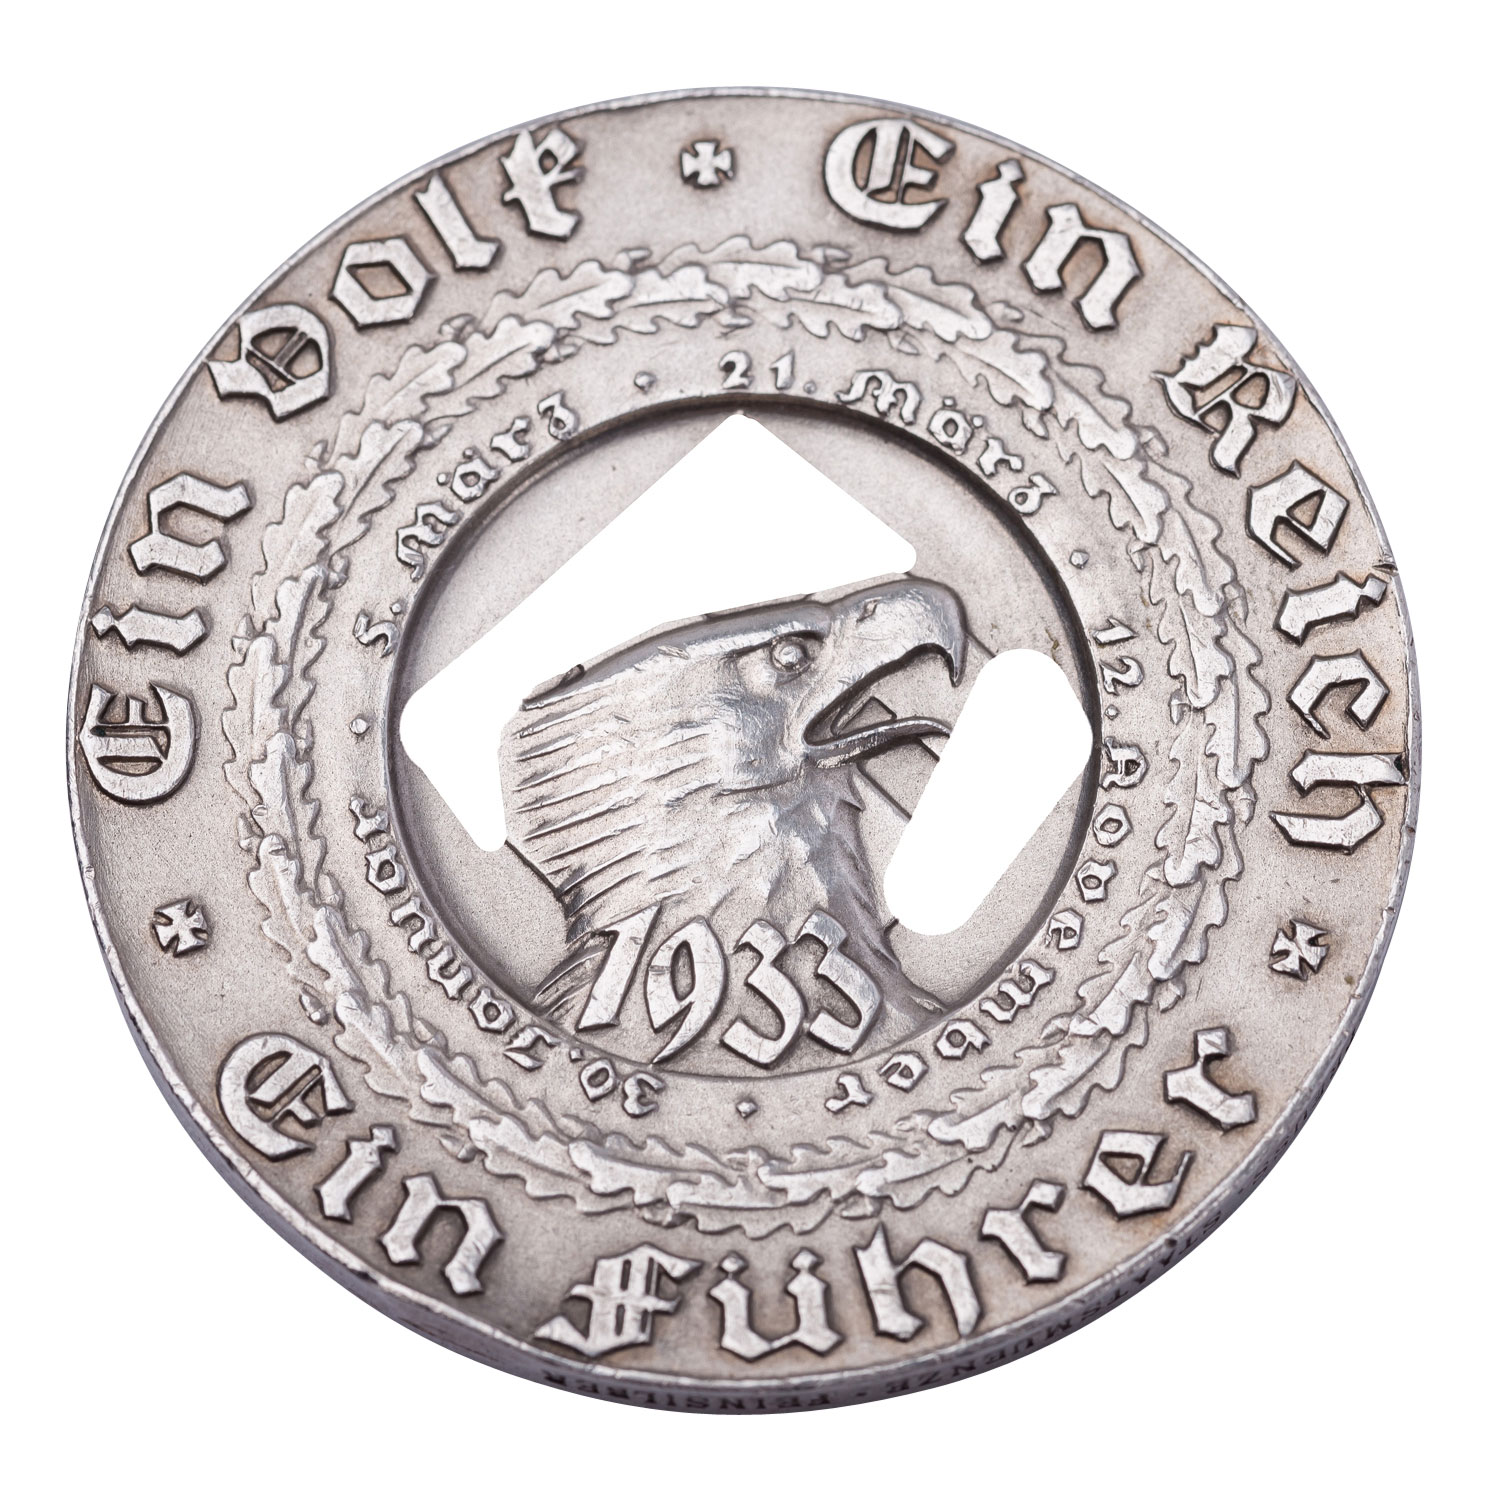 Deutschland 1933-34 - Silbermedaille 1933, auf Hitlers Machtergreifung, - Image 2 of 2